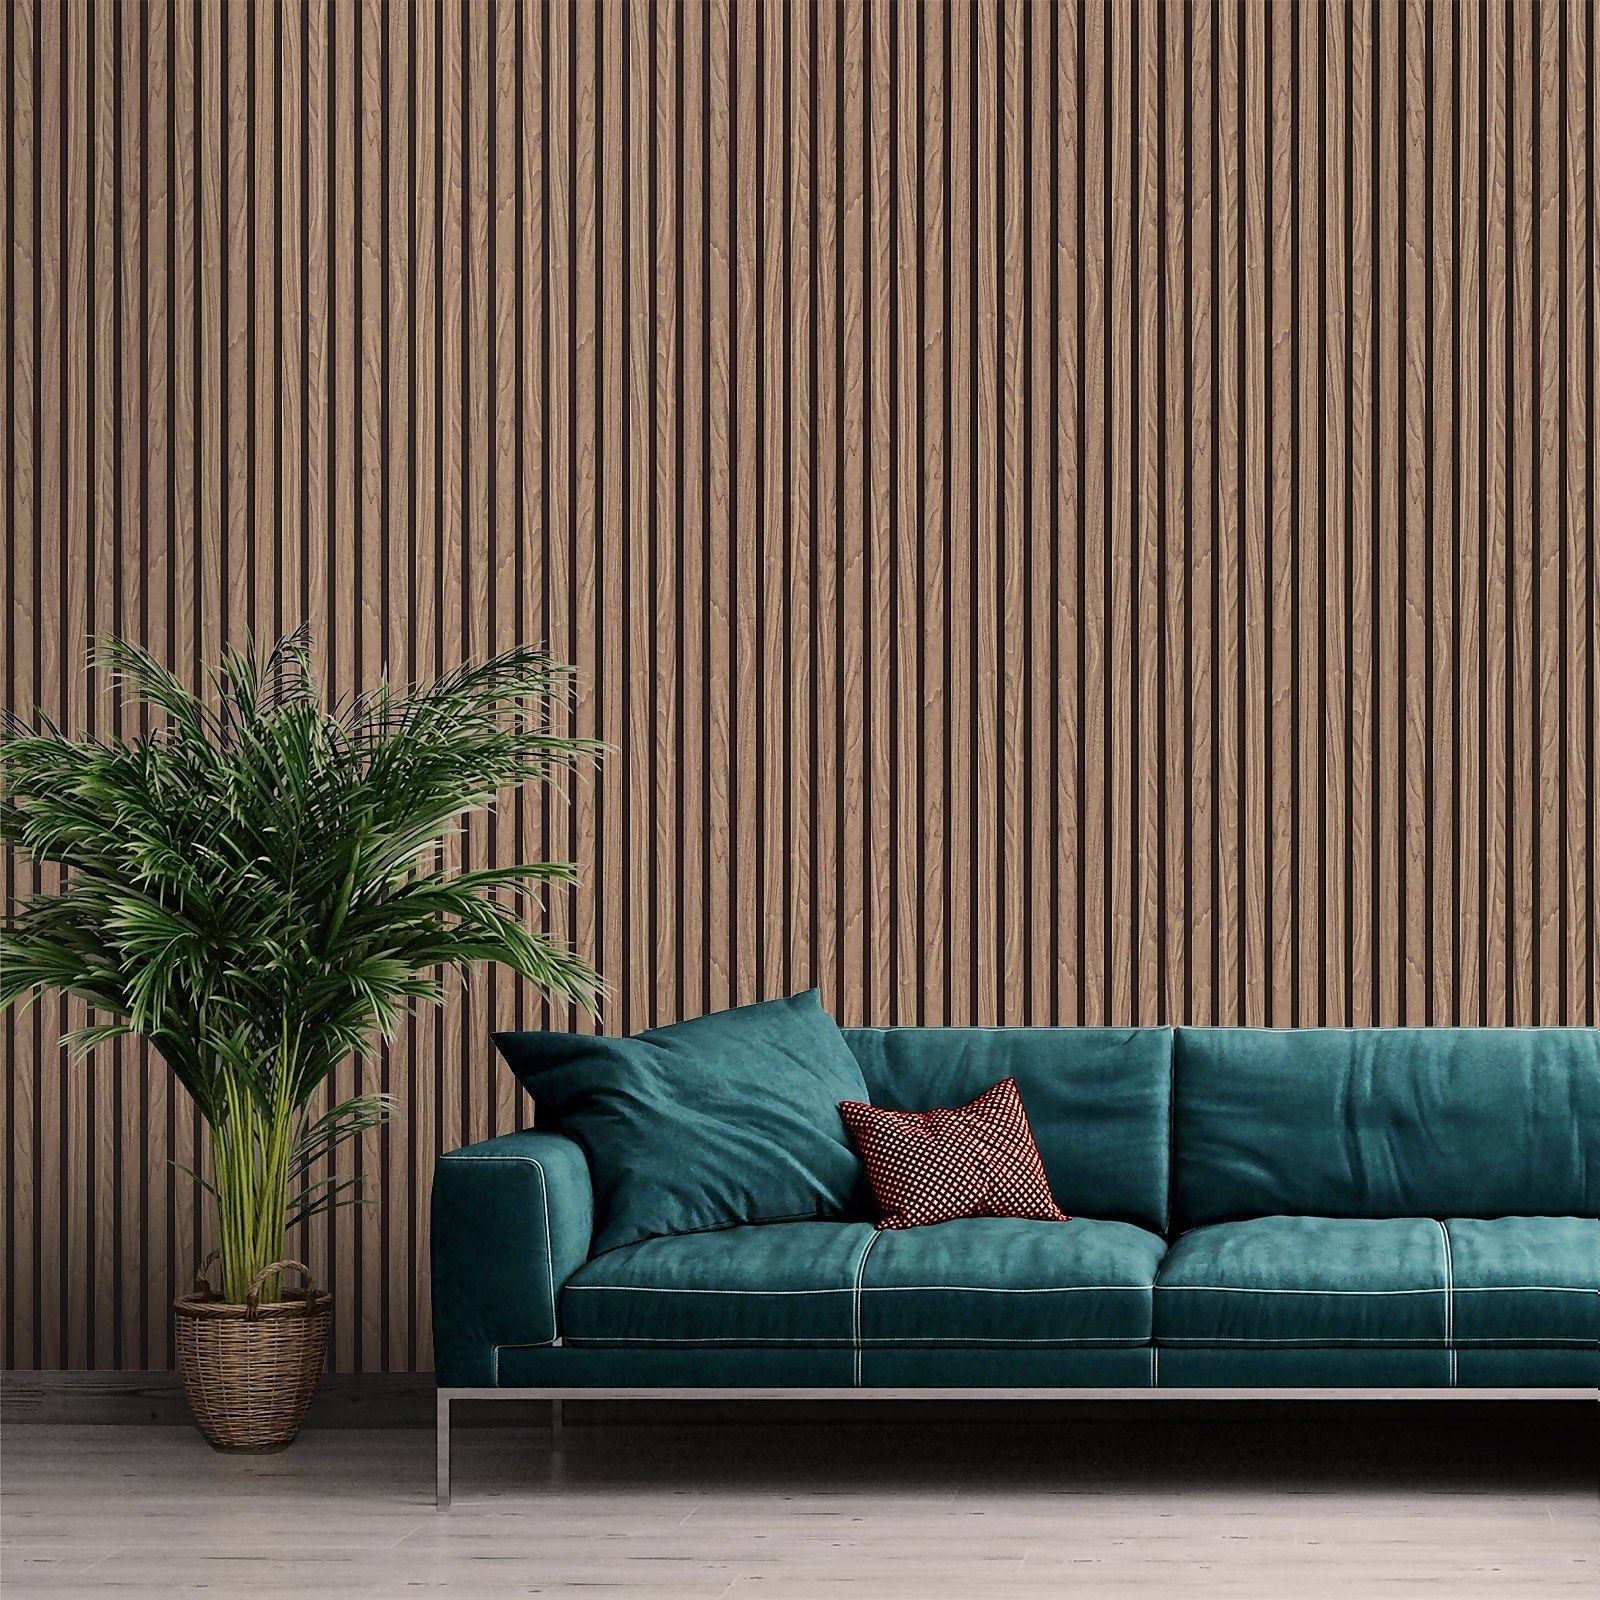 Wunderschöne Holzlattenpaneele-Designs für Zuhause und Büro – Coole Deckenlattenwand – Wohndeko-Ideen